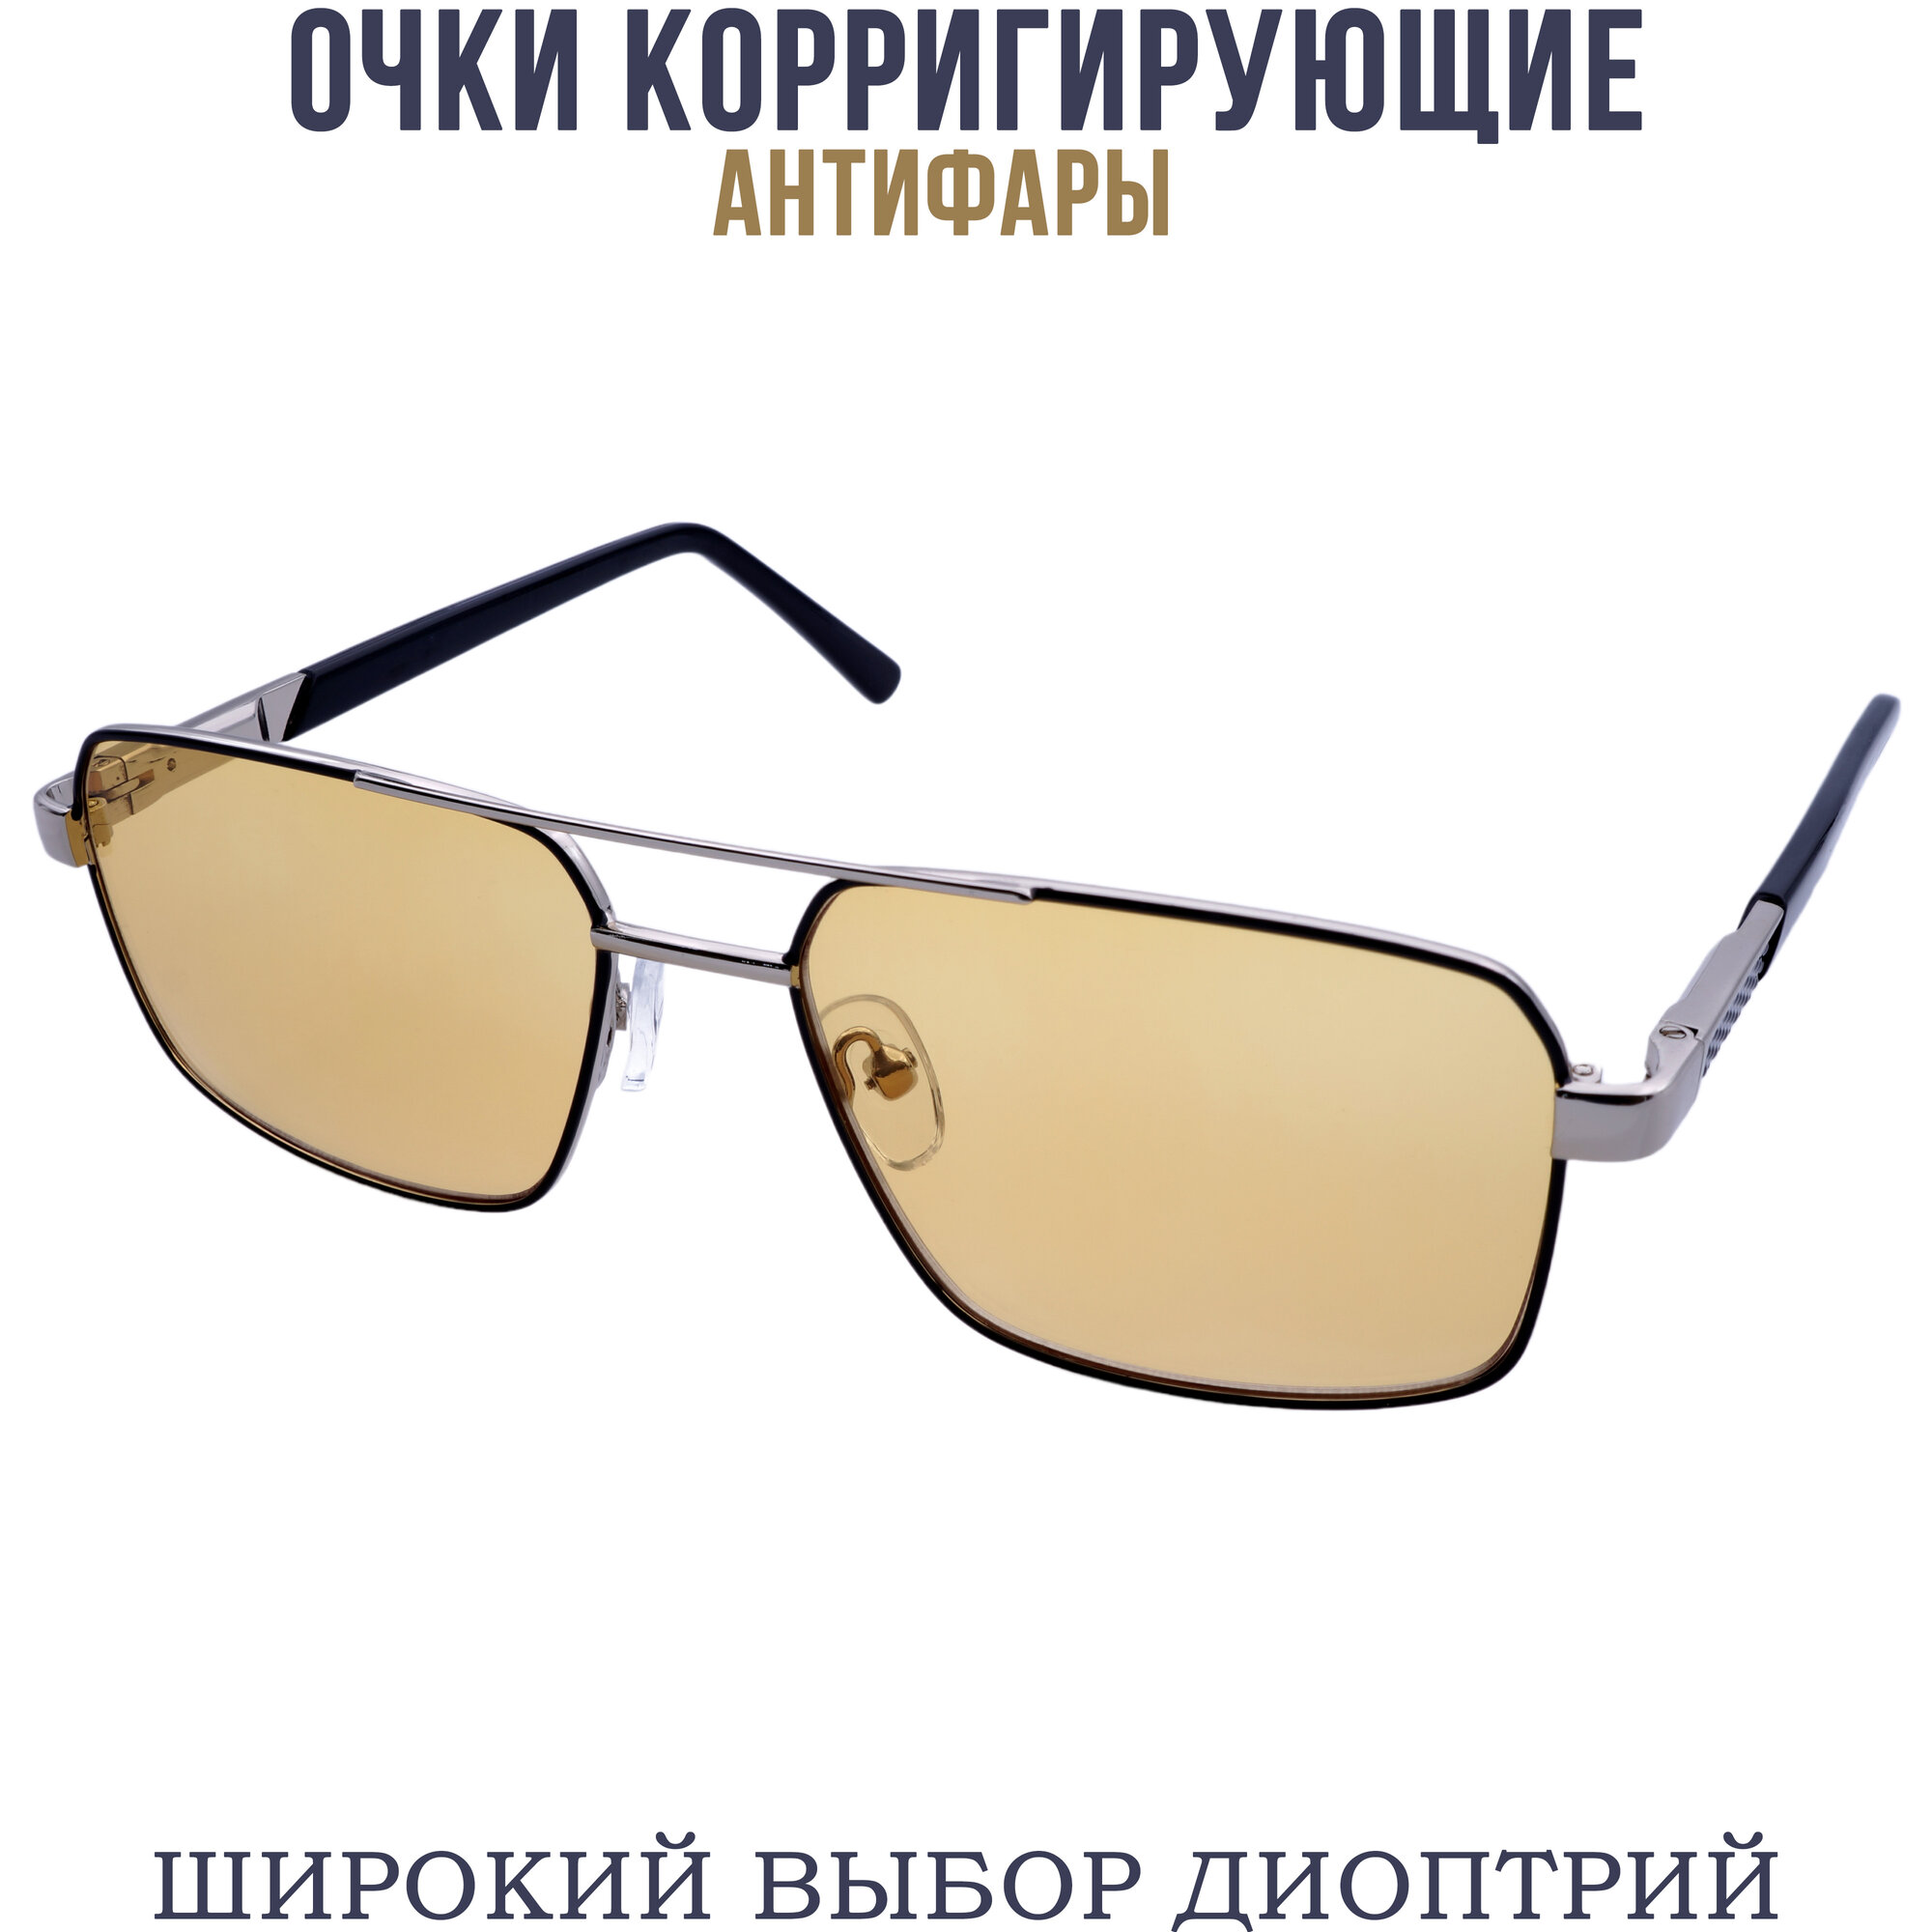 Готовые очки для зрения антифара с диоптриями pd62-64 бронзово-черный -2.25